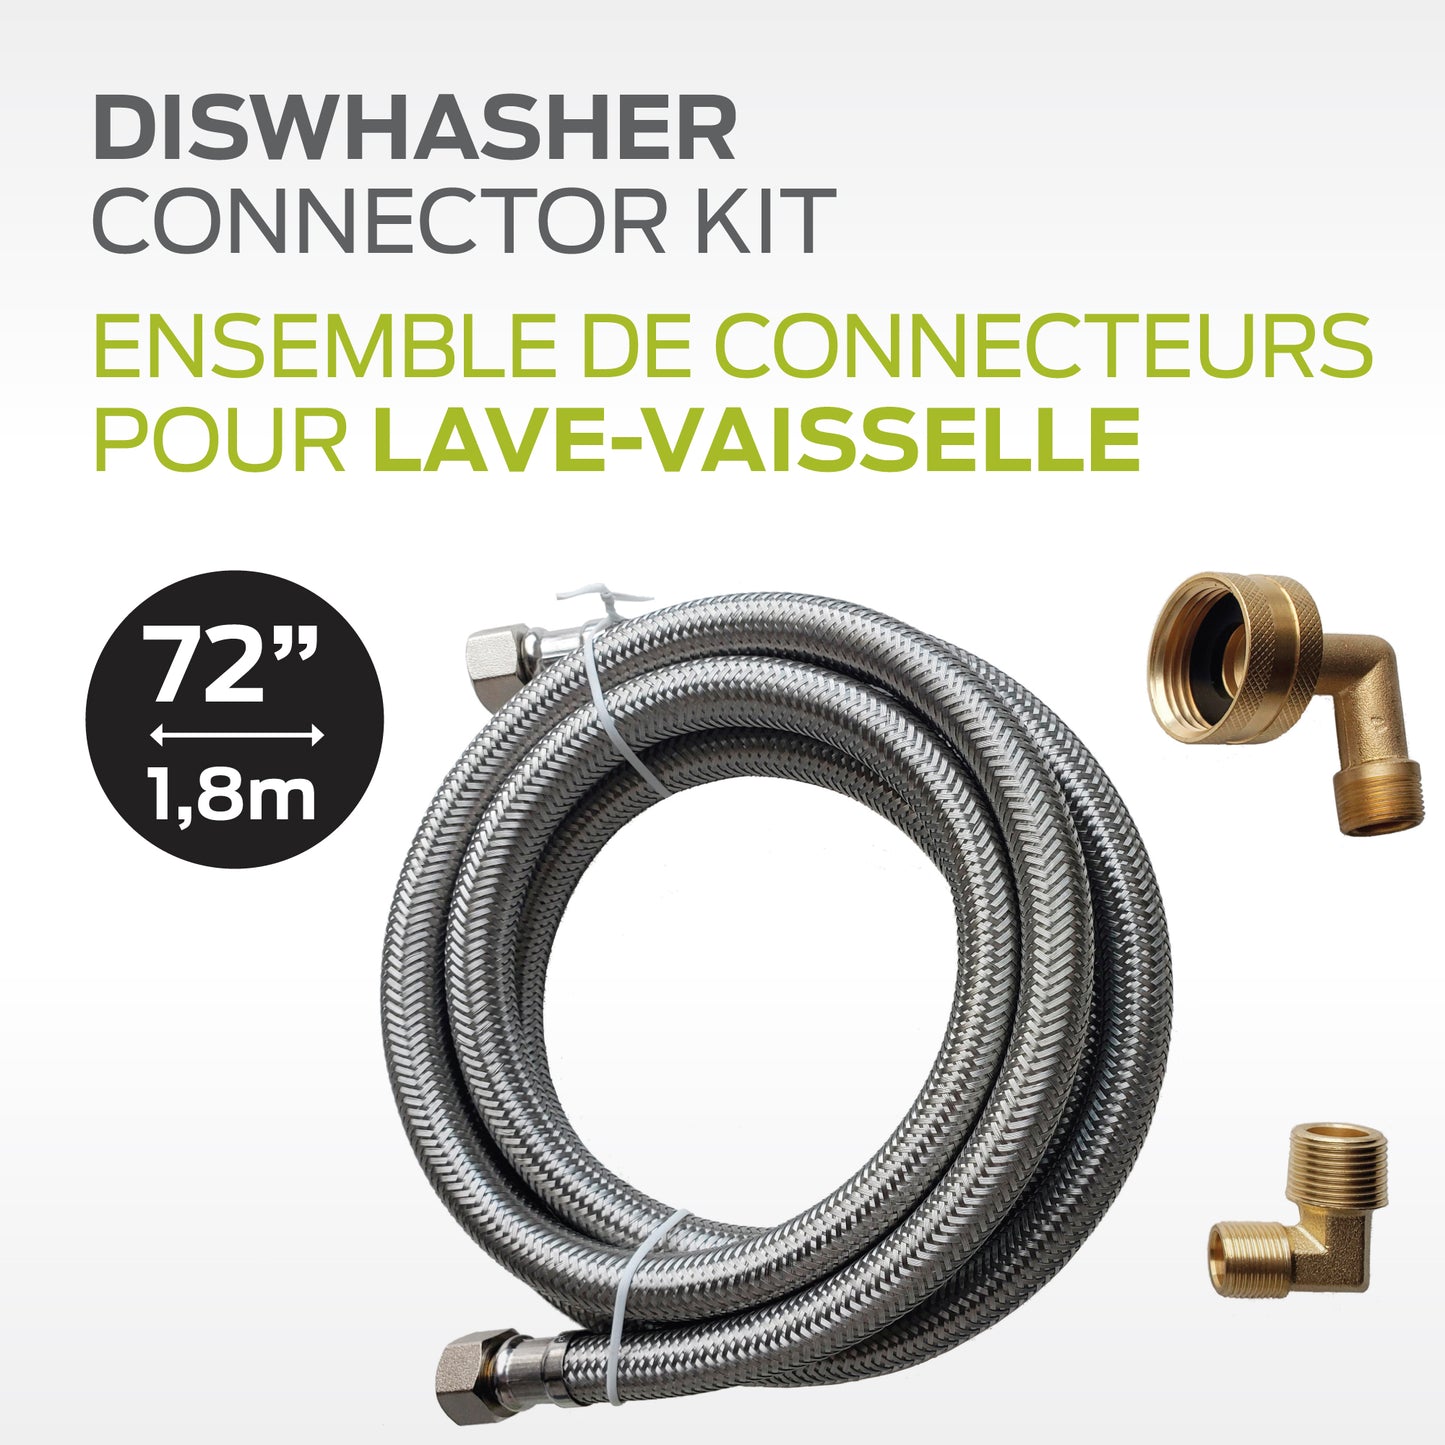 Ensemble de connecteurs pour lave-vaisselle -                                                       72’’ / 1,8 m